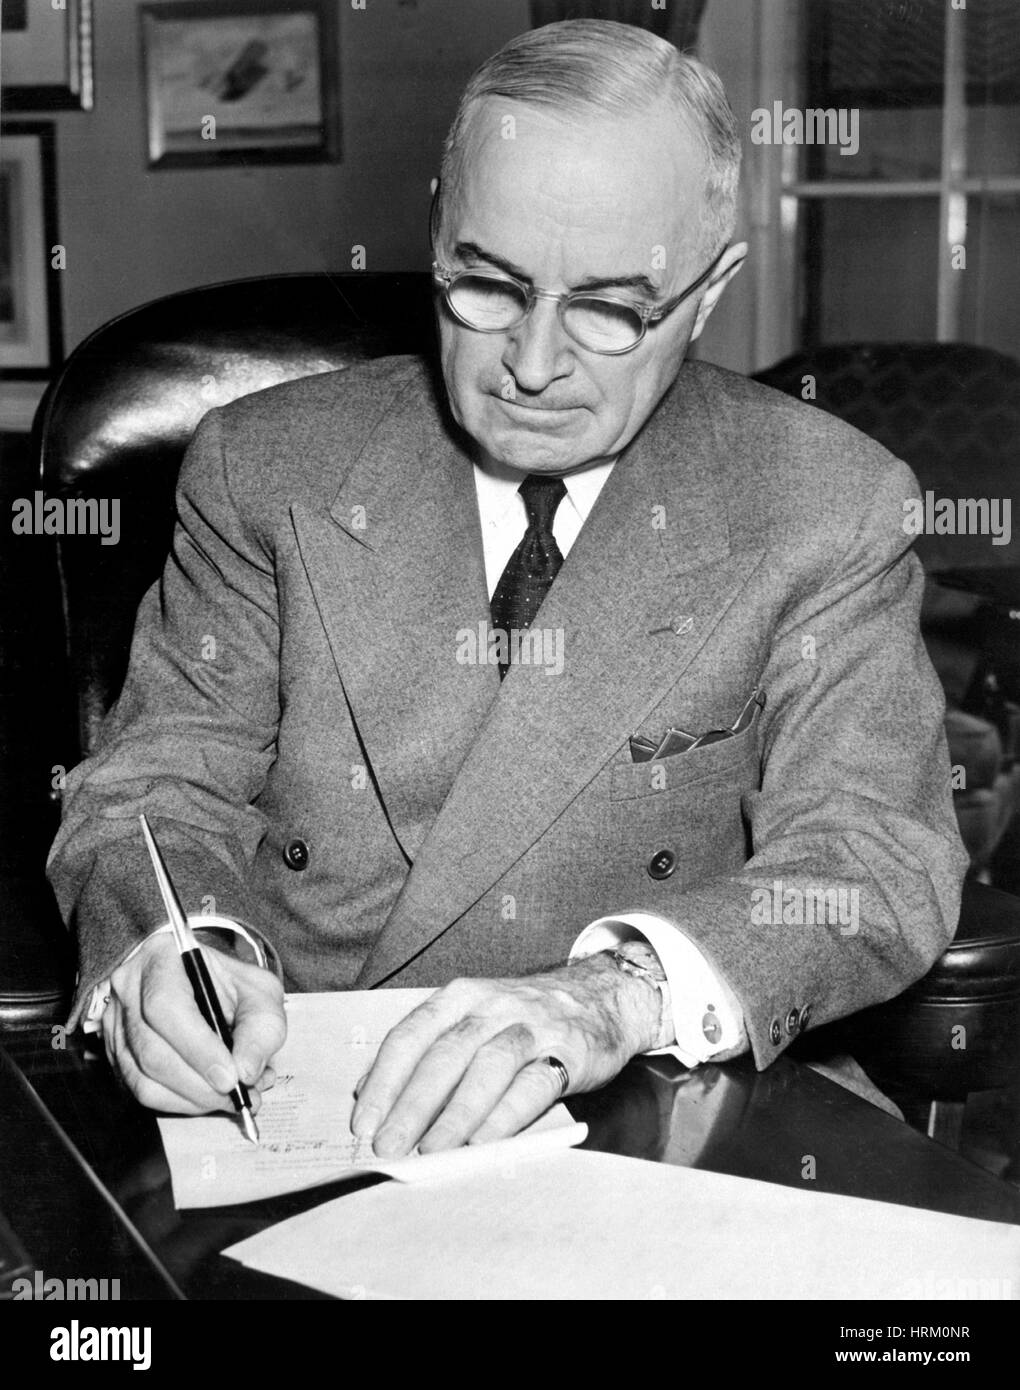 Truman (1884-1972) als 33. Präsident der Vereinigten Staaten unterzeichnet eine Proklamation 0n 16. Dezember 1950 einen nationalen Notstand zu erklären und zur Ermächtigung der Eintritt Amerikas in den Korea-Krieg Stockfoto